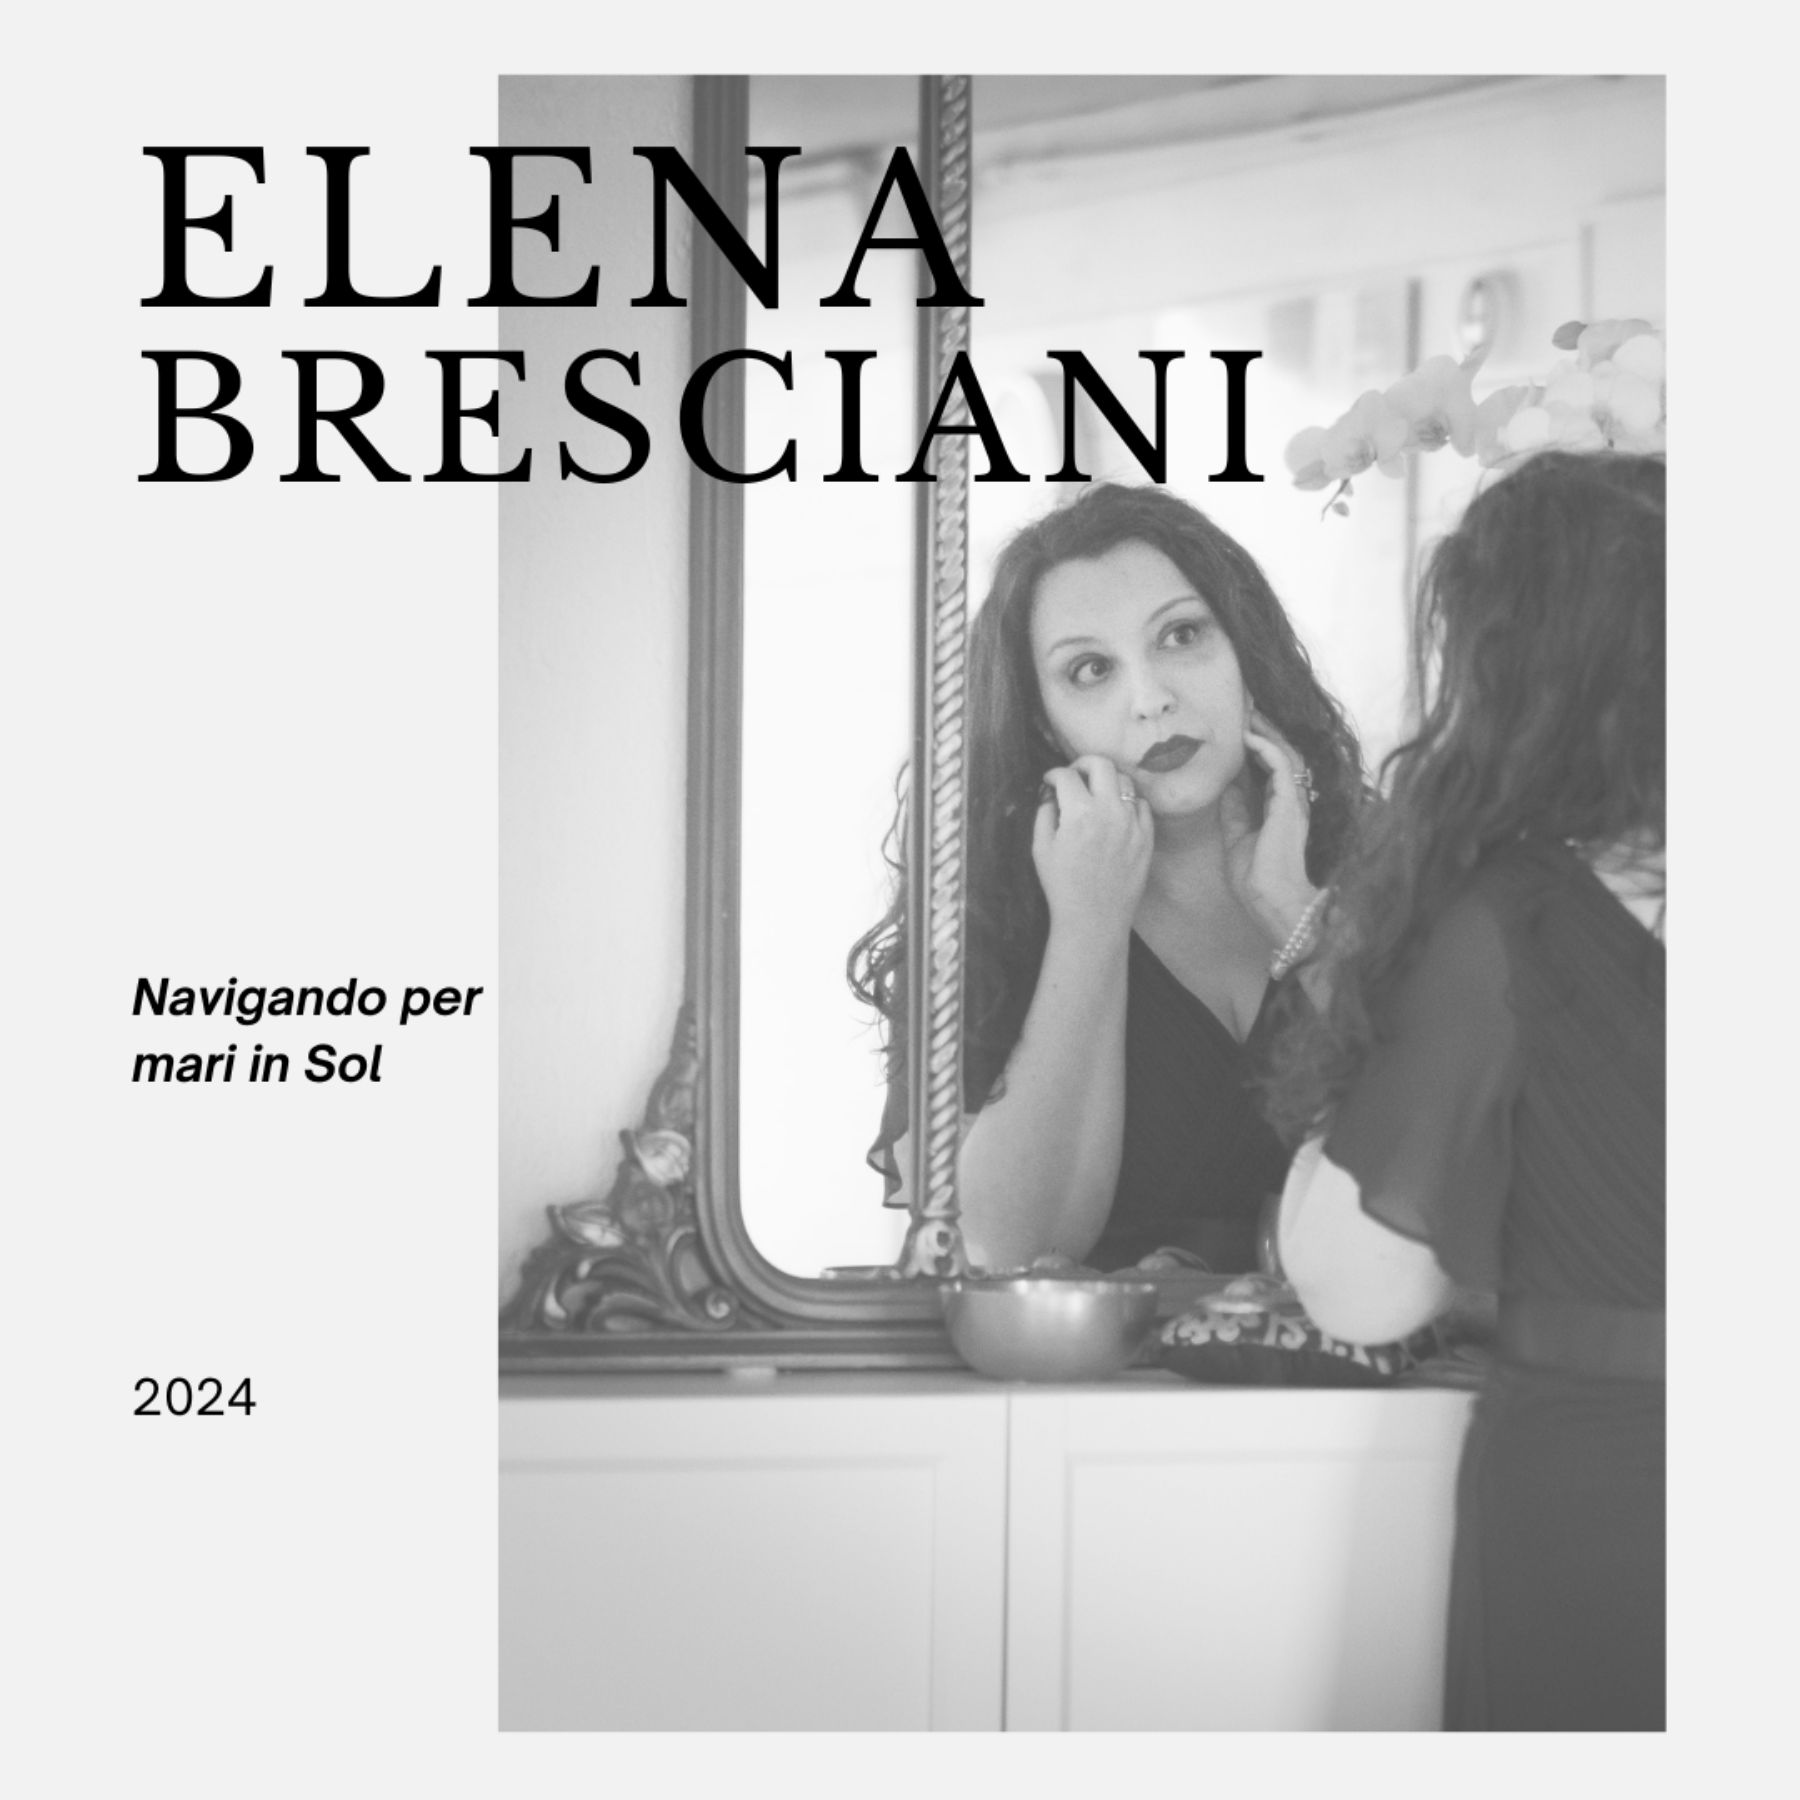 Navigando per mari in Sol, il singolo di Elena Bresciani in uscita su tutte le piattaforme